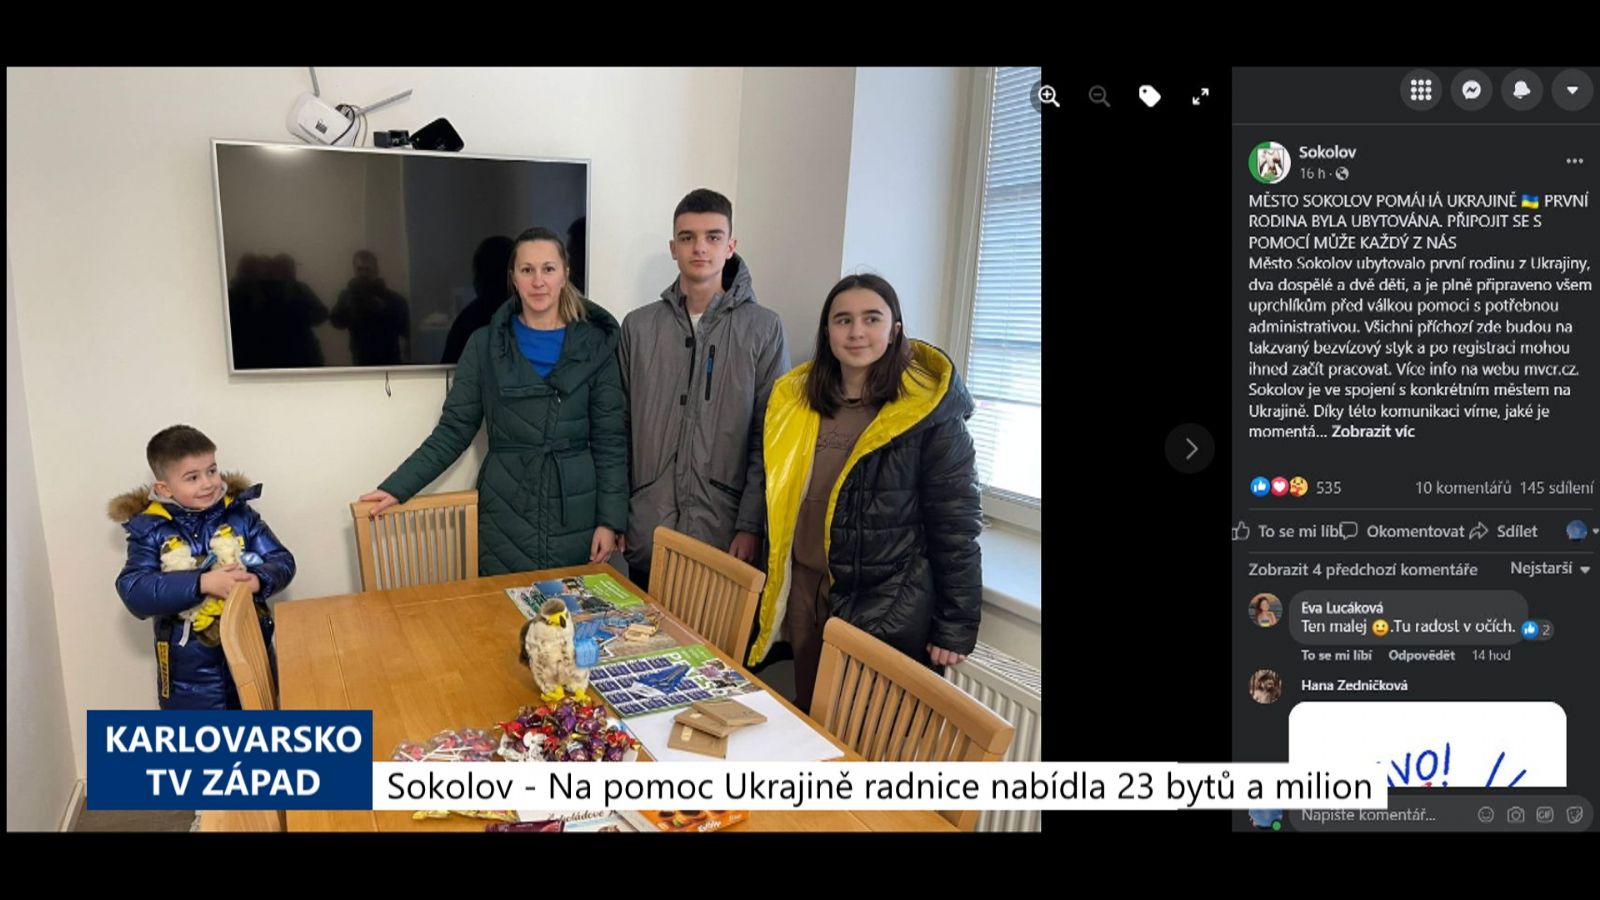 Sokolov: Na pomoc Ukrajině radnice nabídla 23 bytů a milion korun (TV Západ)